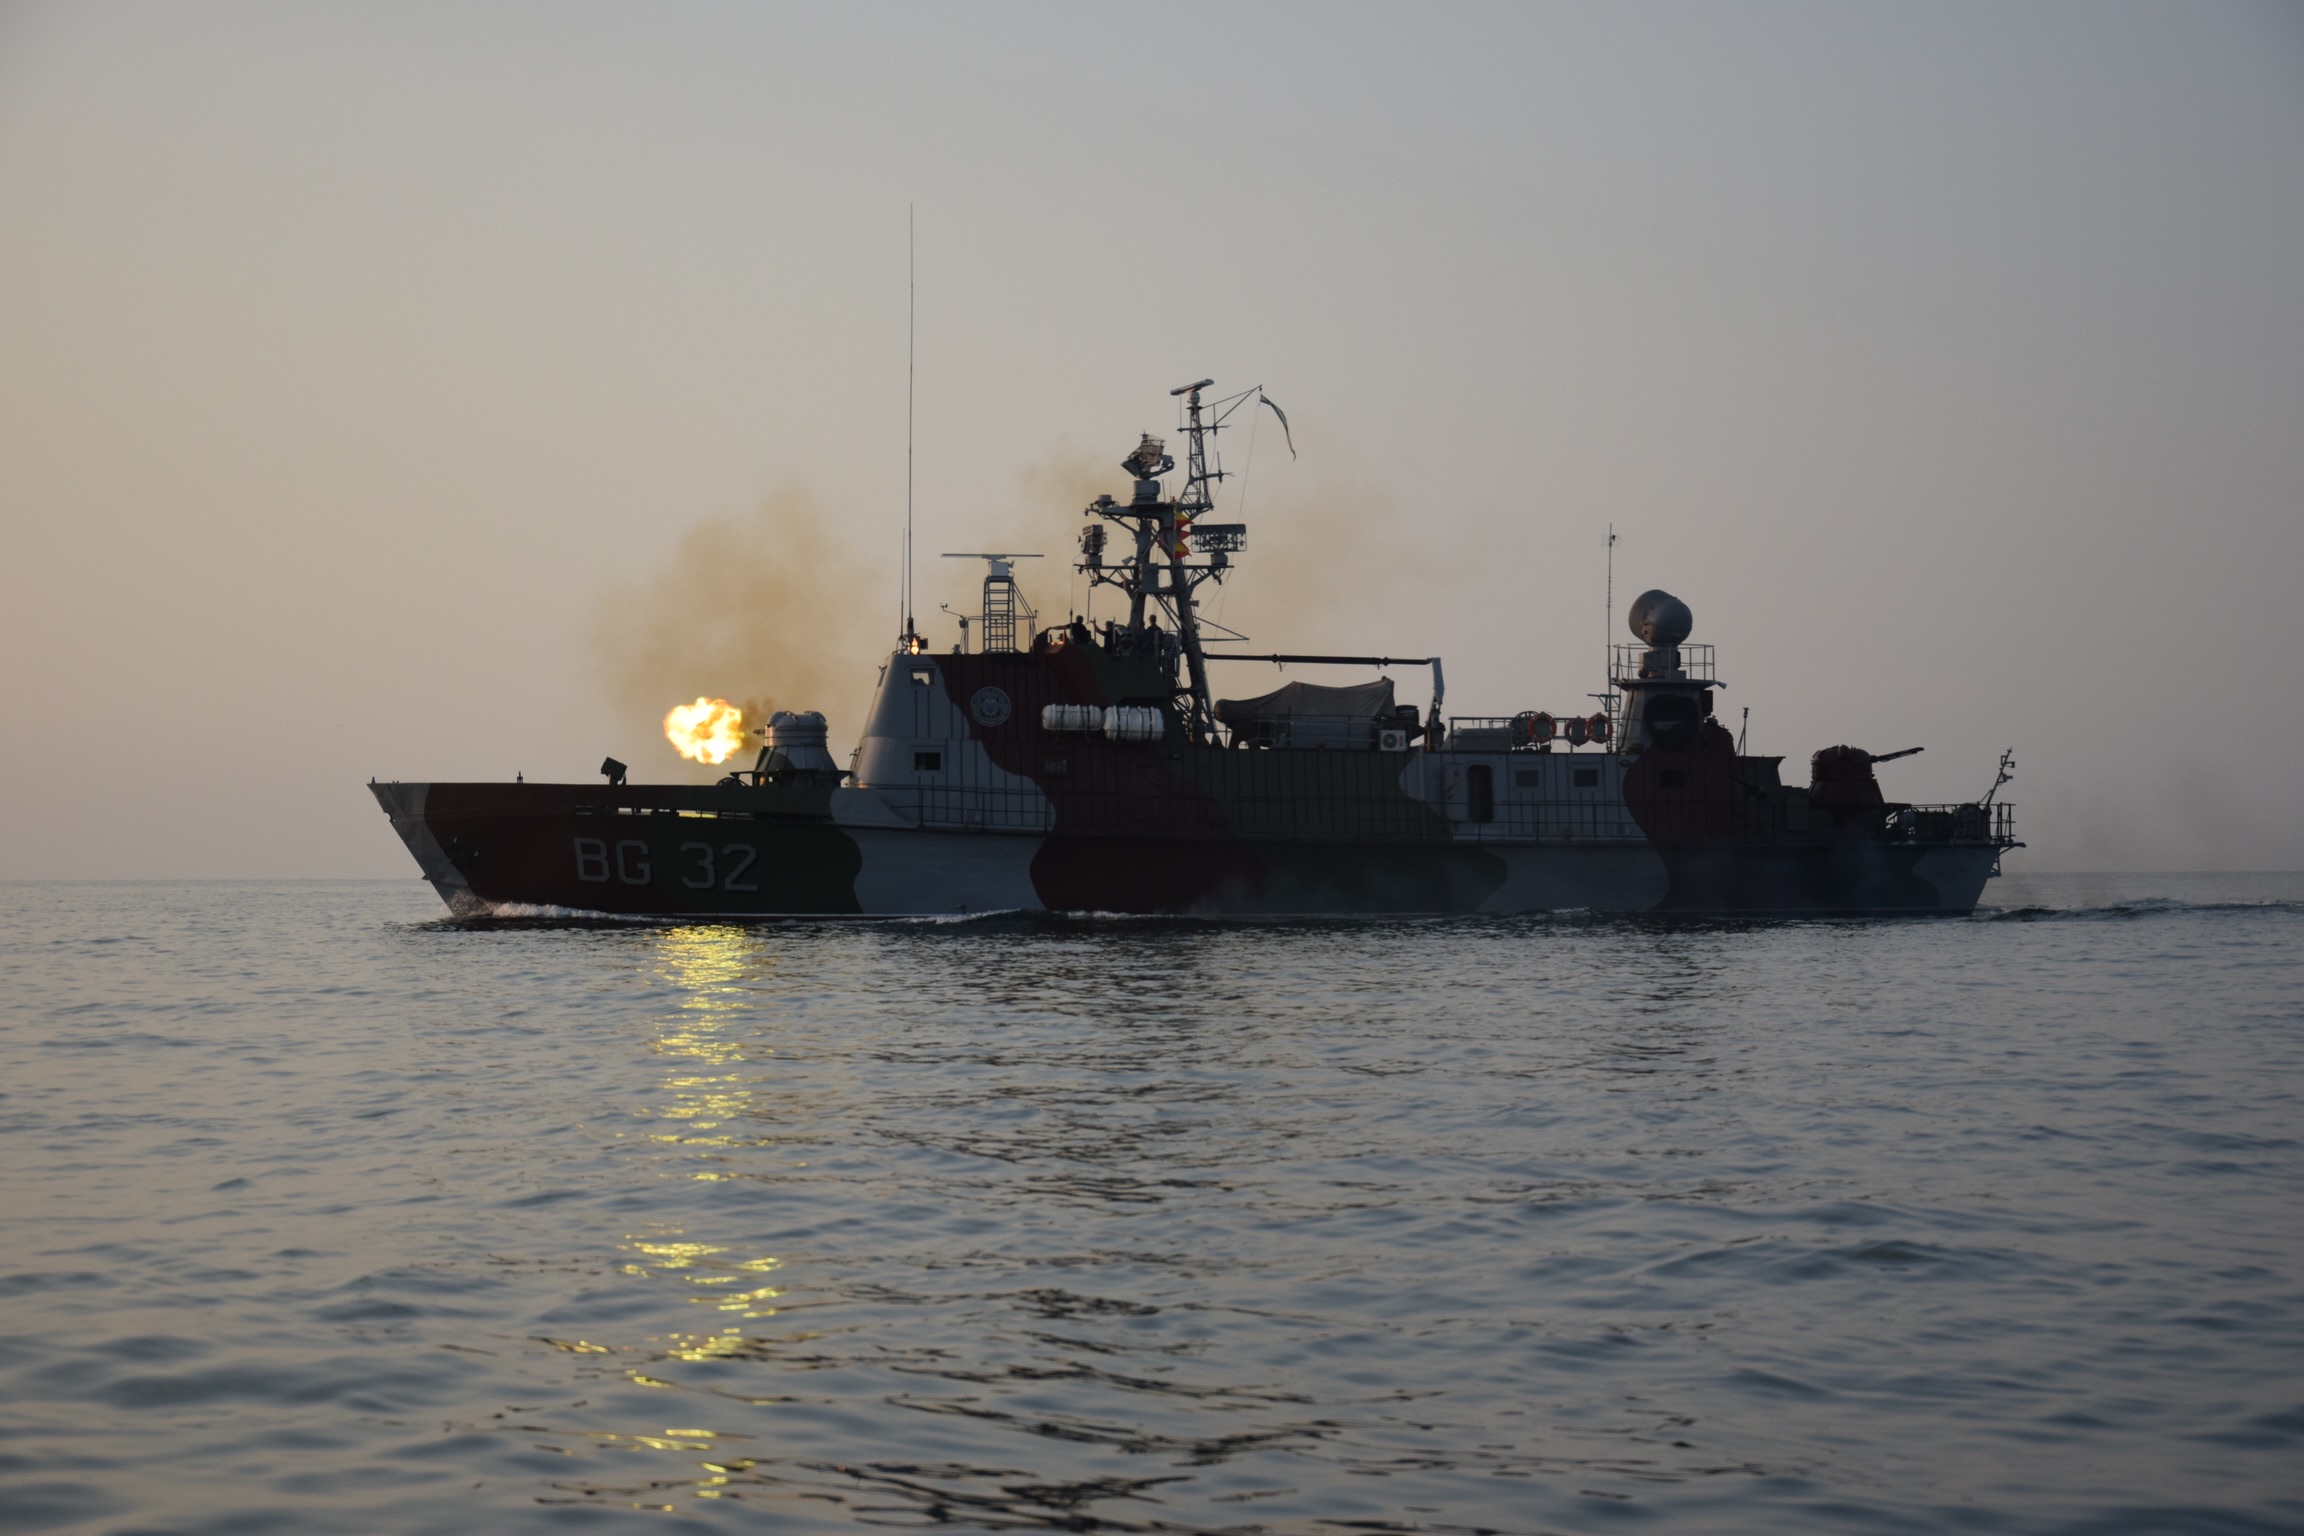 Прикордонники та бійці ЗСУ провели навчання в Азовському морі. ФСБ підглядали